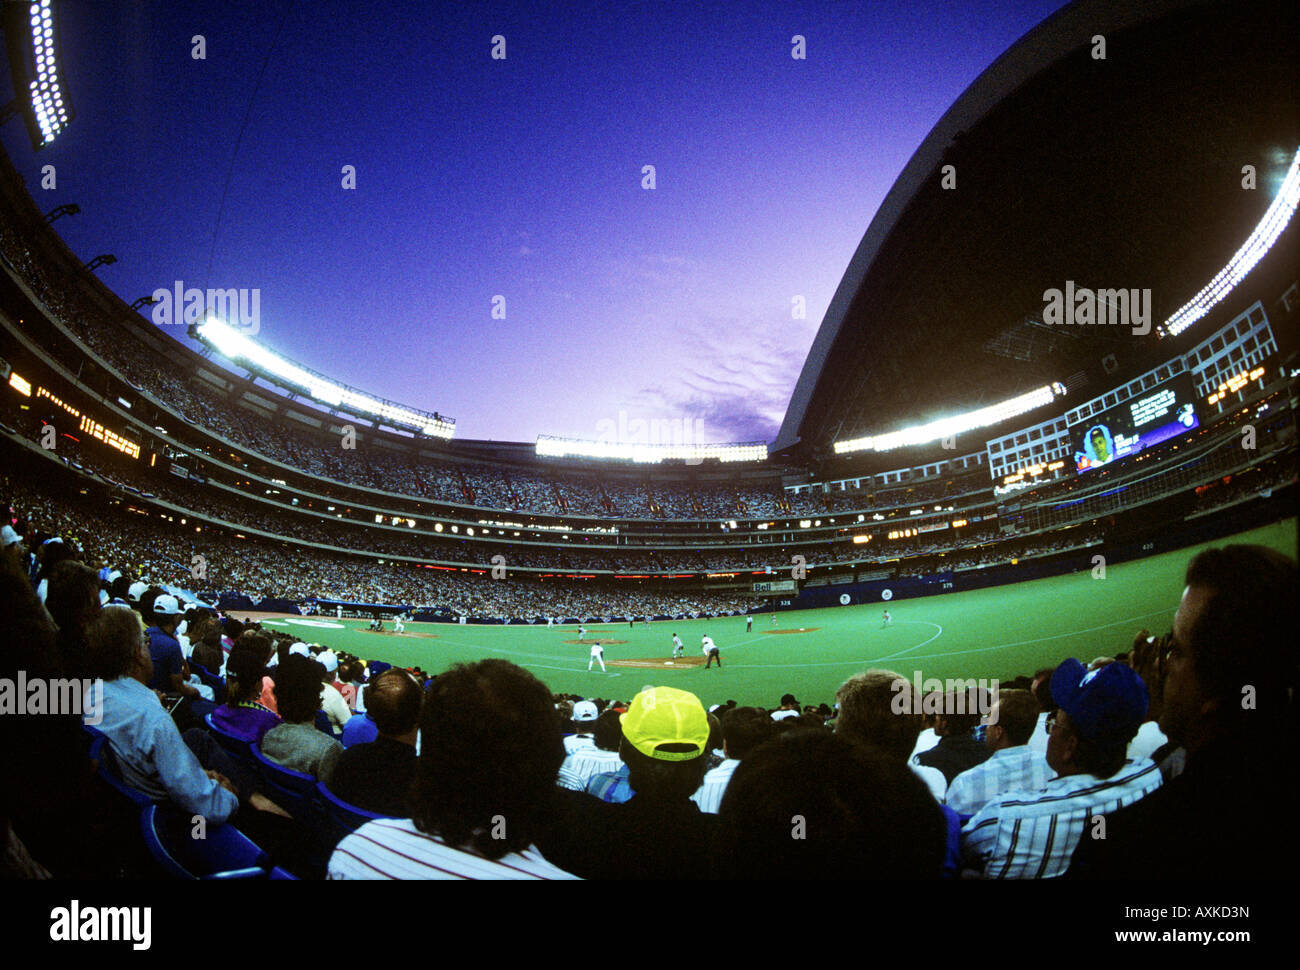 Le Centre Rogers de Toronto au baseball avec toit ouvert Banque D'Images